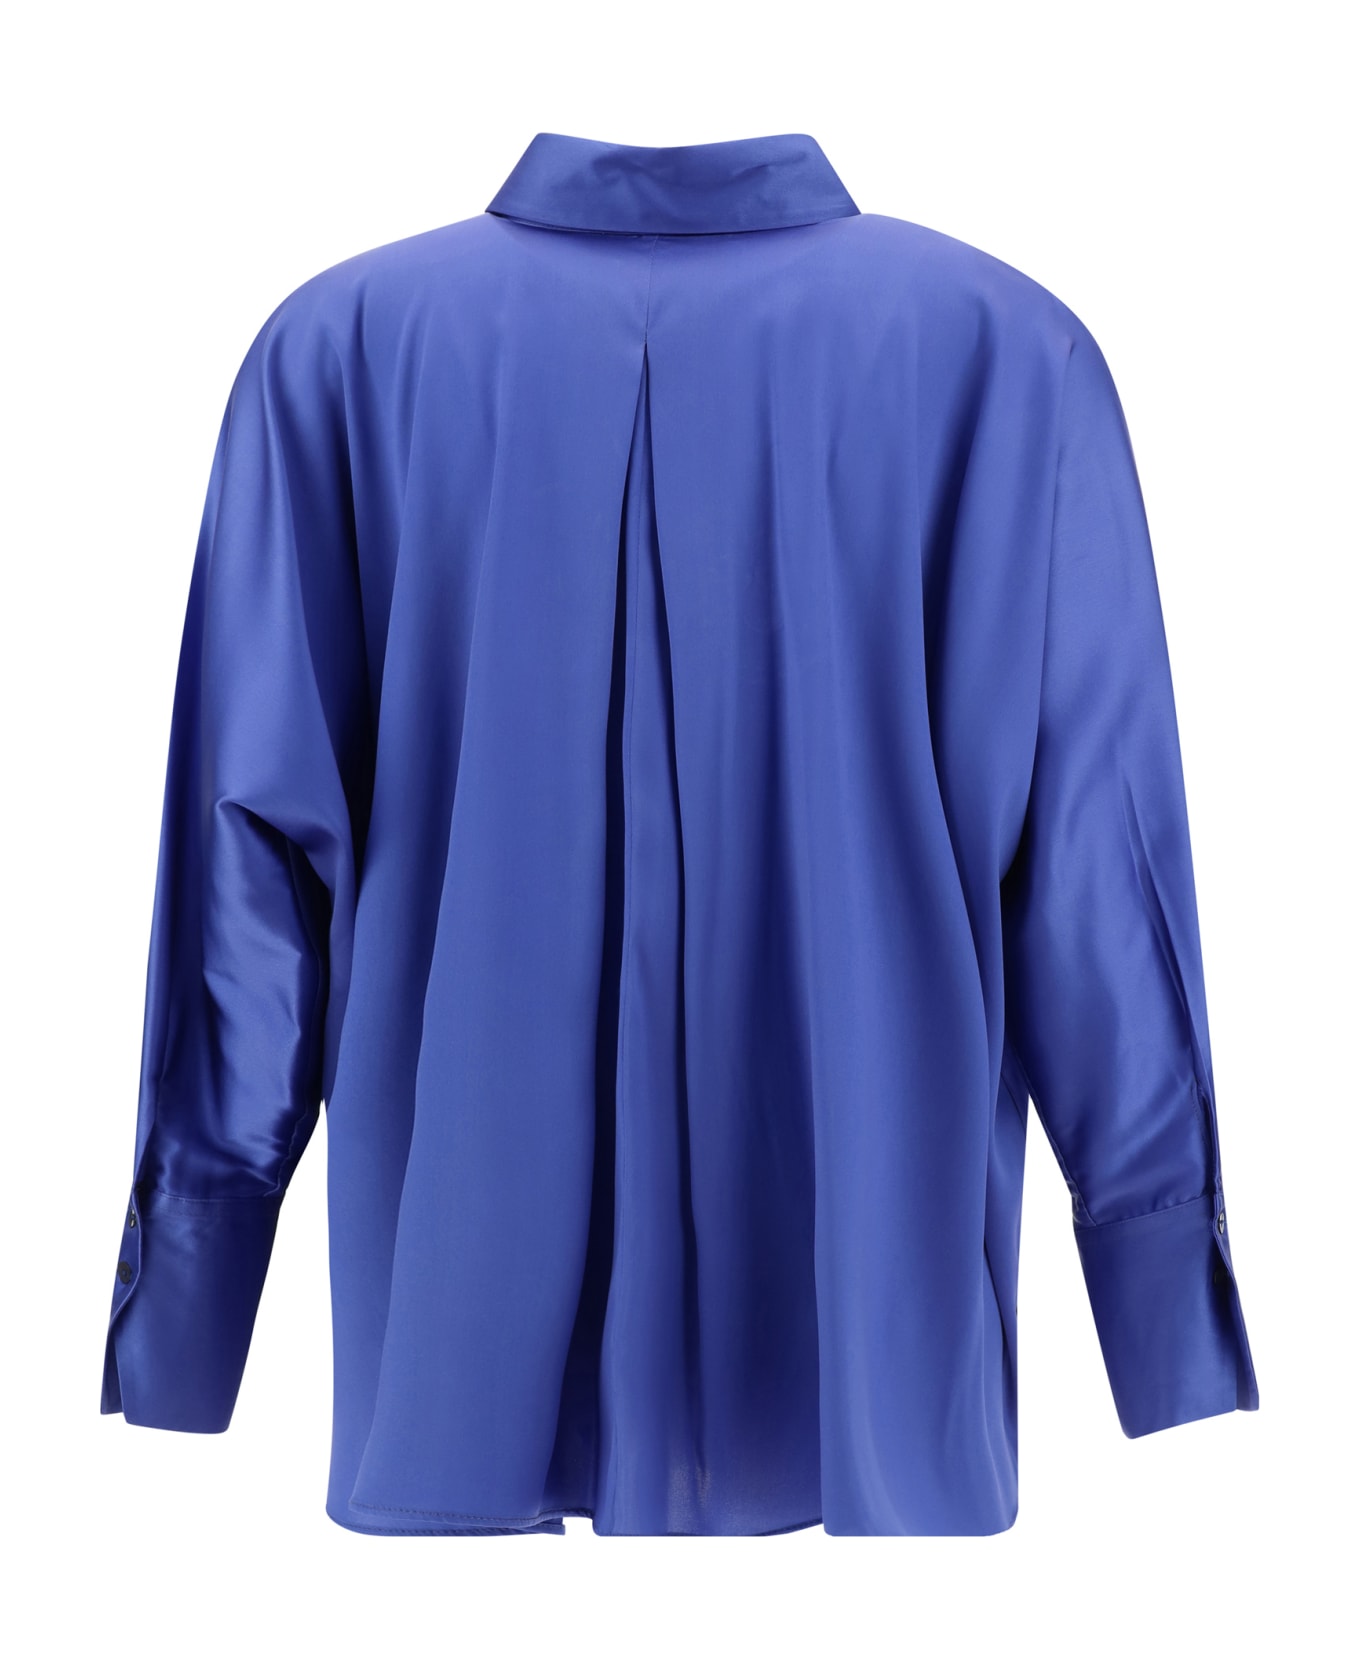 Ella Kimono Shirt - Cobalto 833